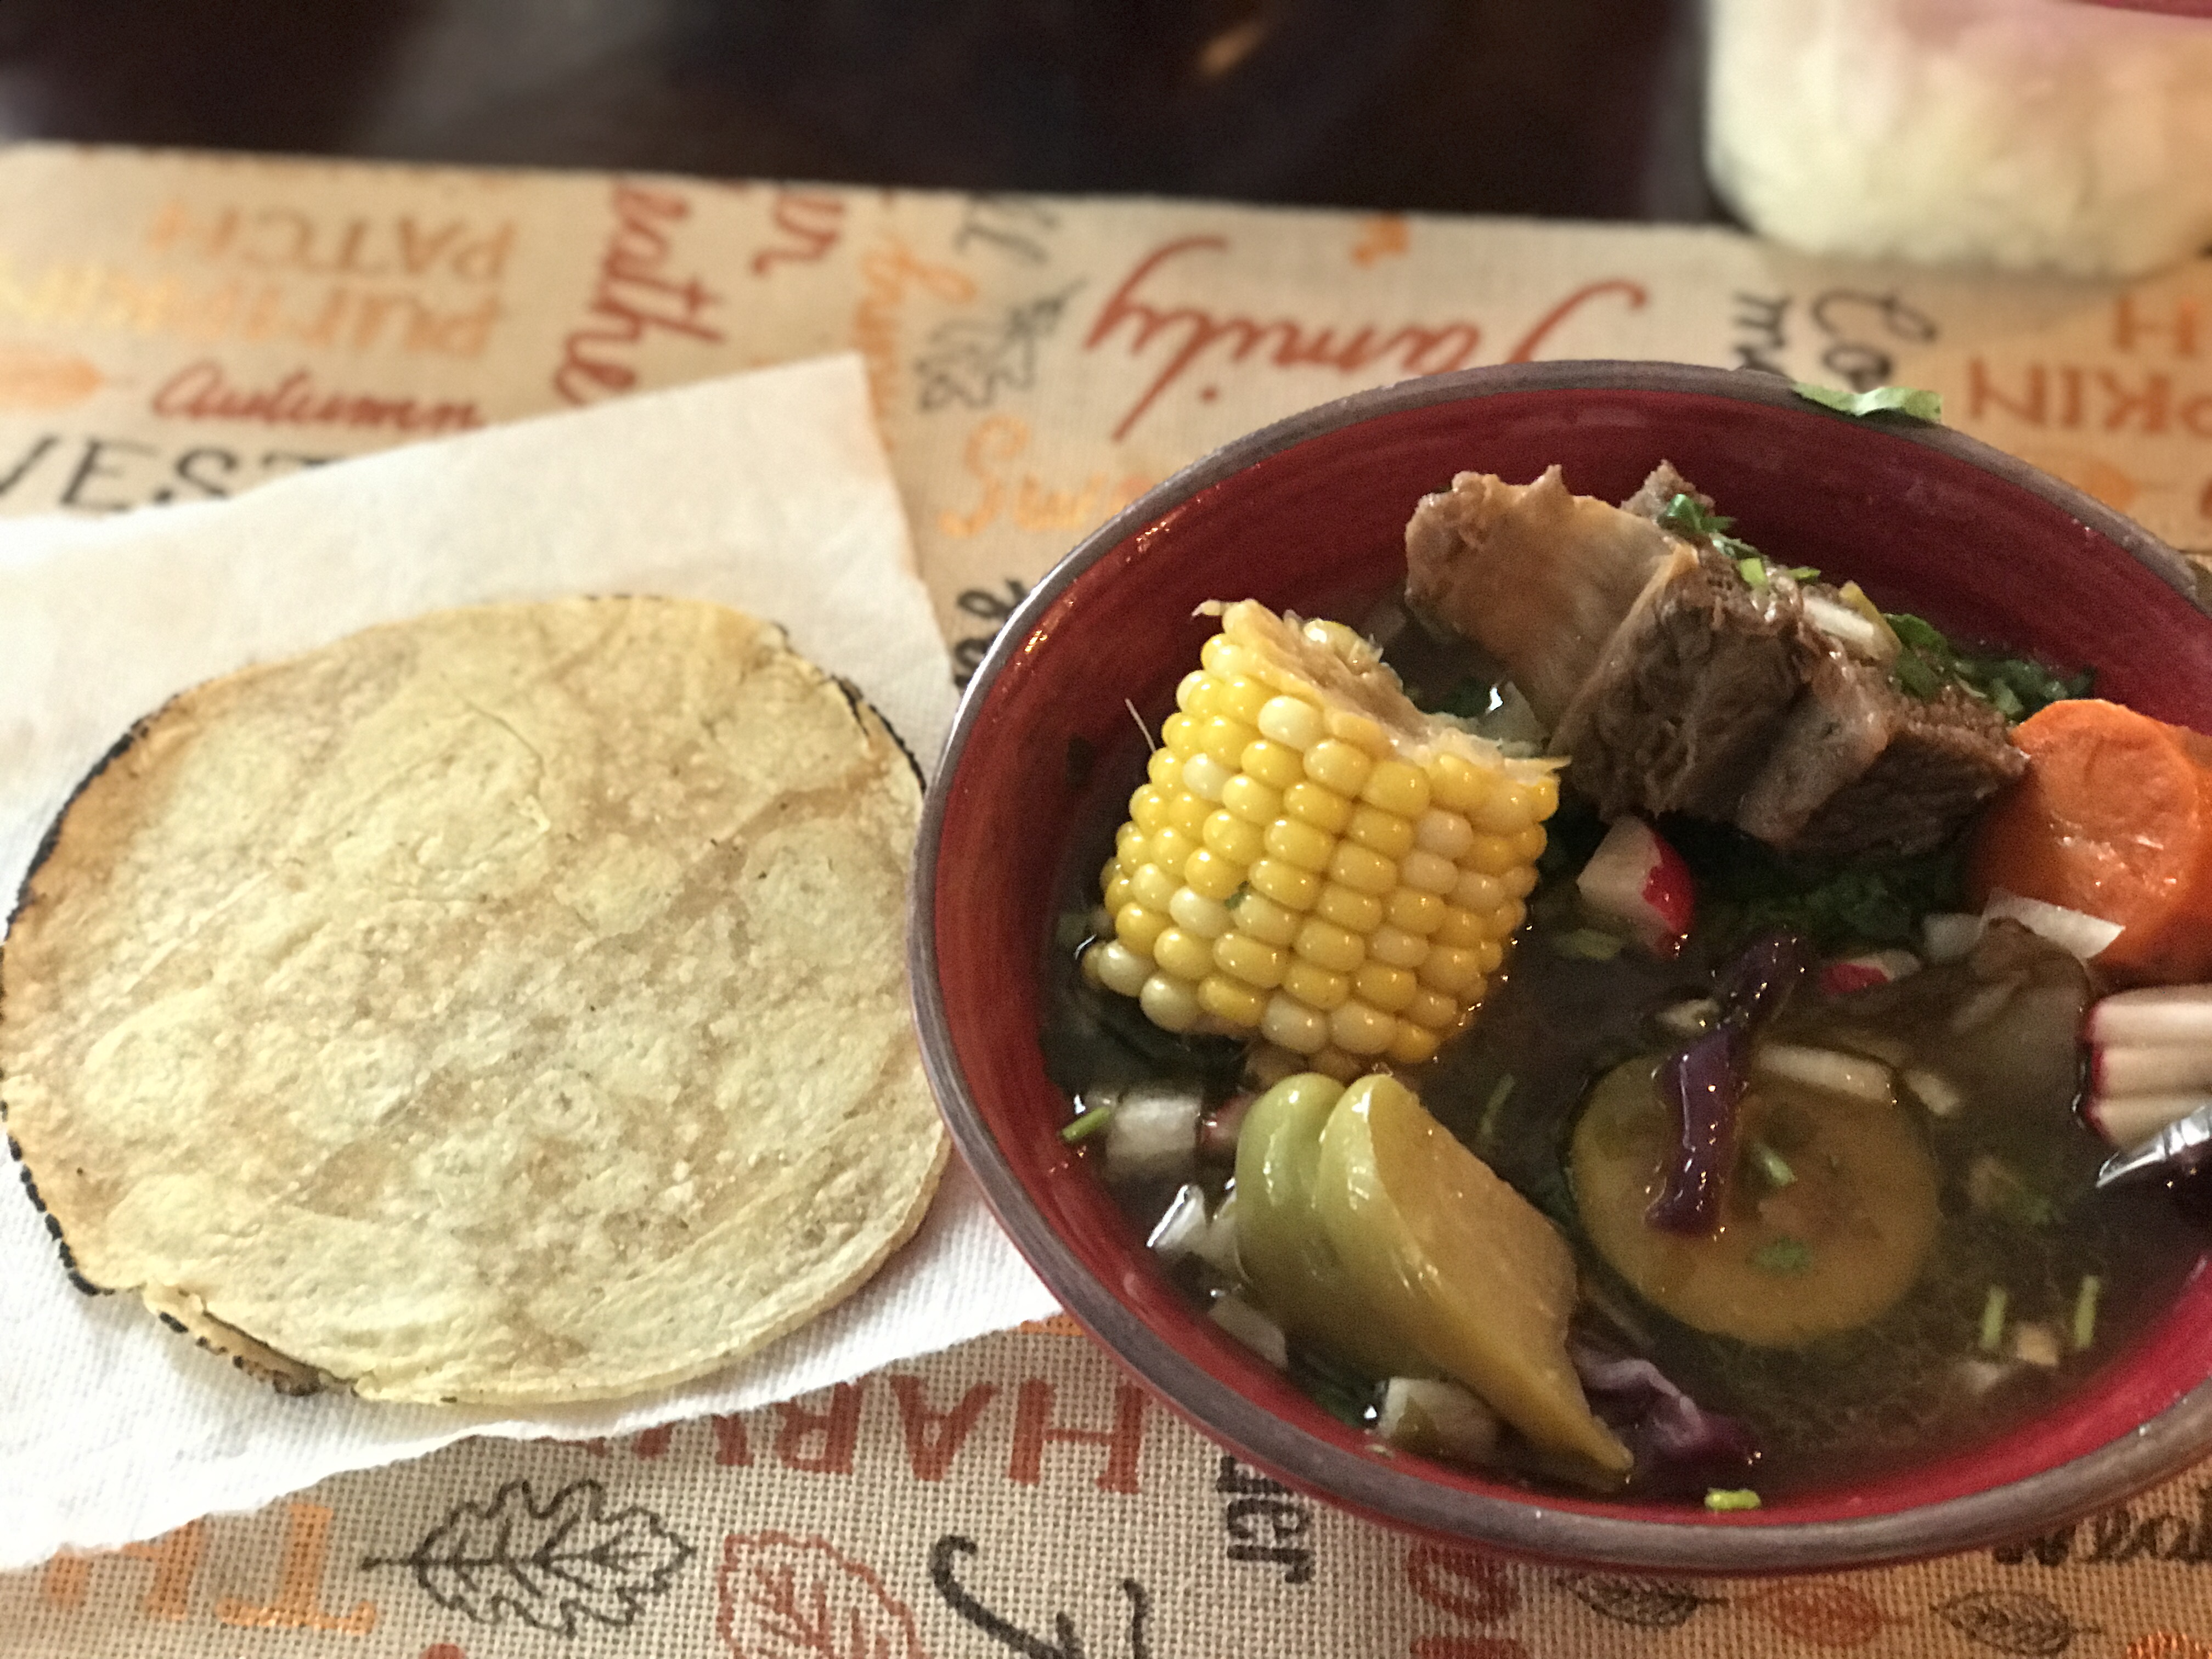 Caldo de Res (Mexican Beef Soup)